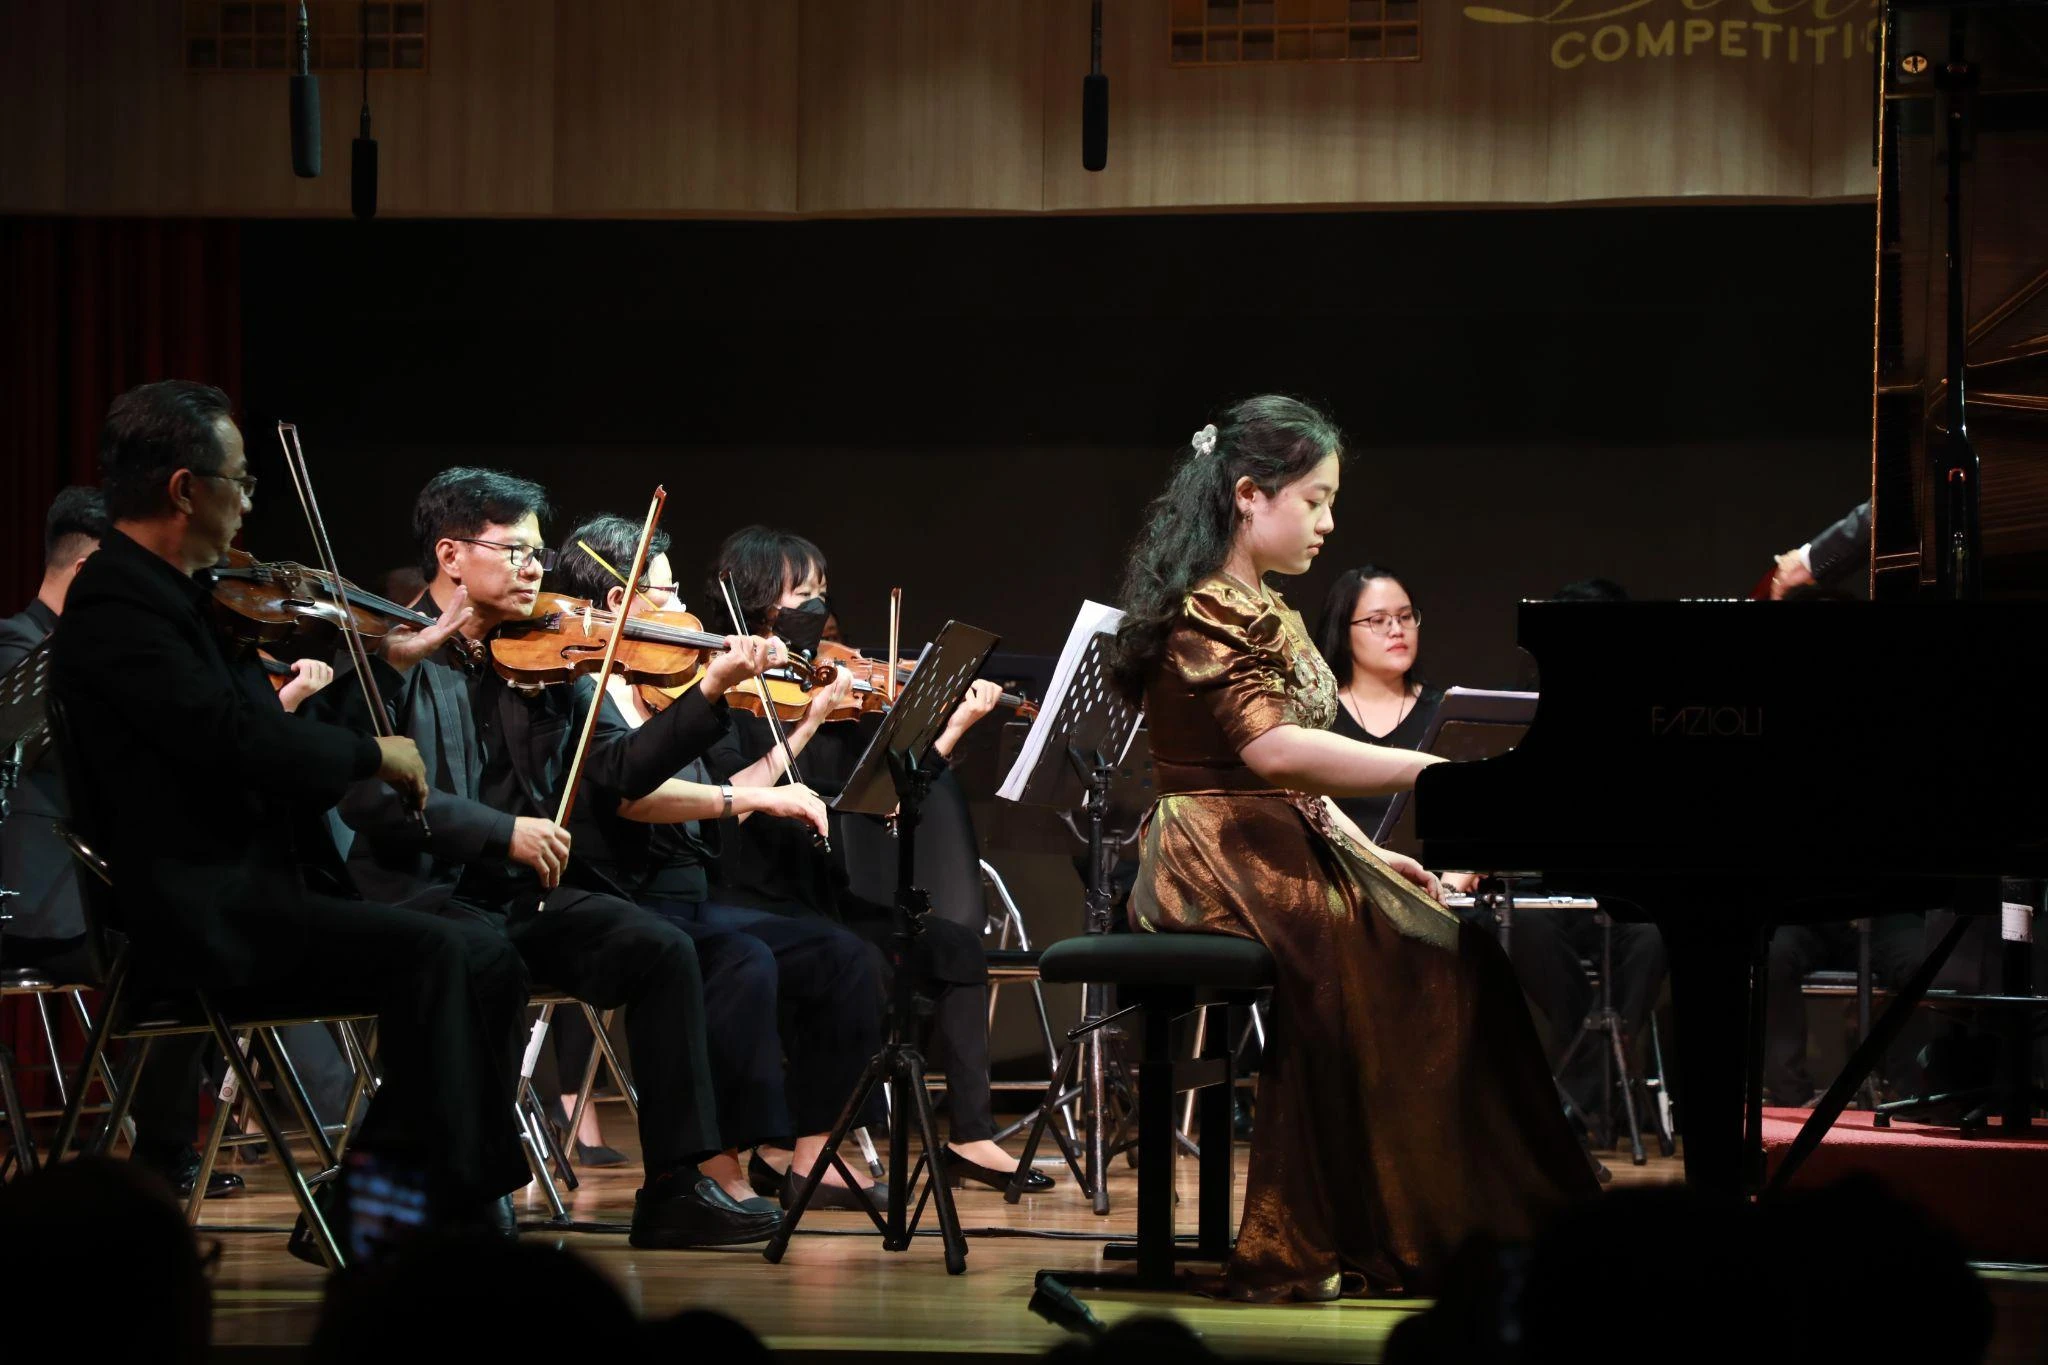 SIU Piano Competition - ‘Điểm hẹn’ tài năng âm nhạc quốc tế